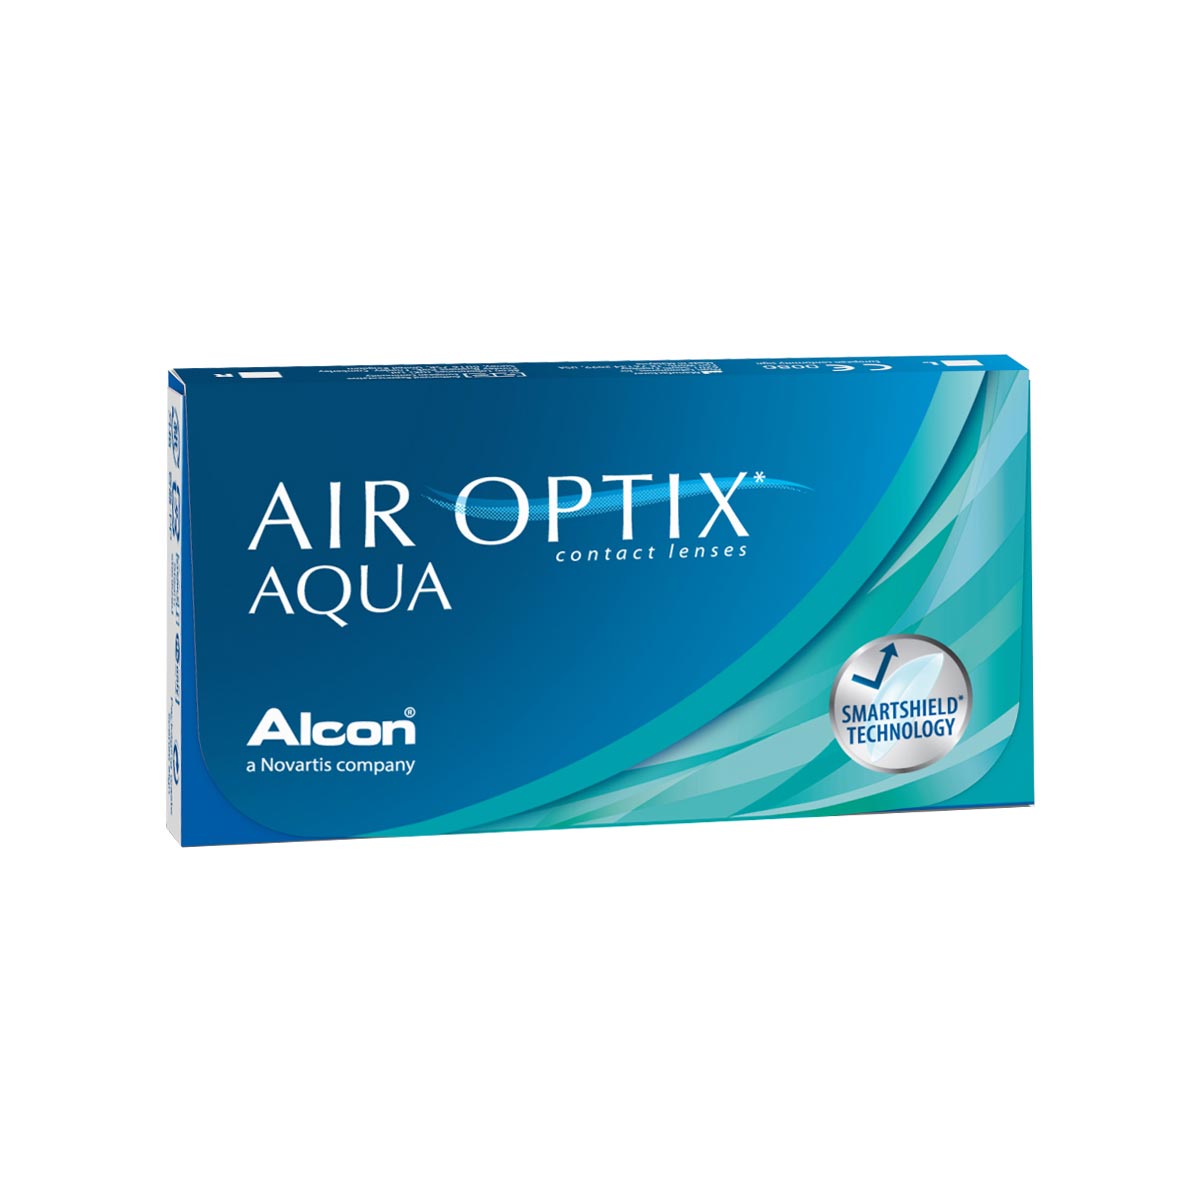 Air Optix Aqua (3 lenses)